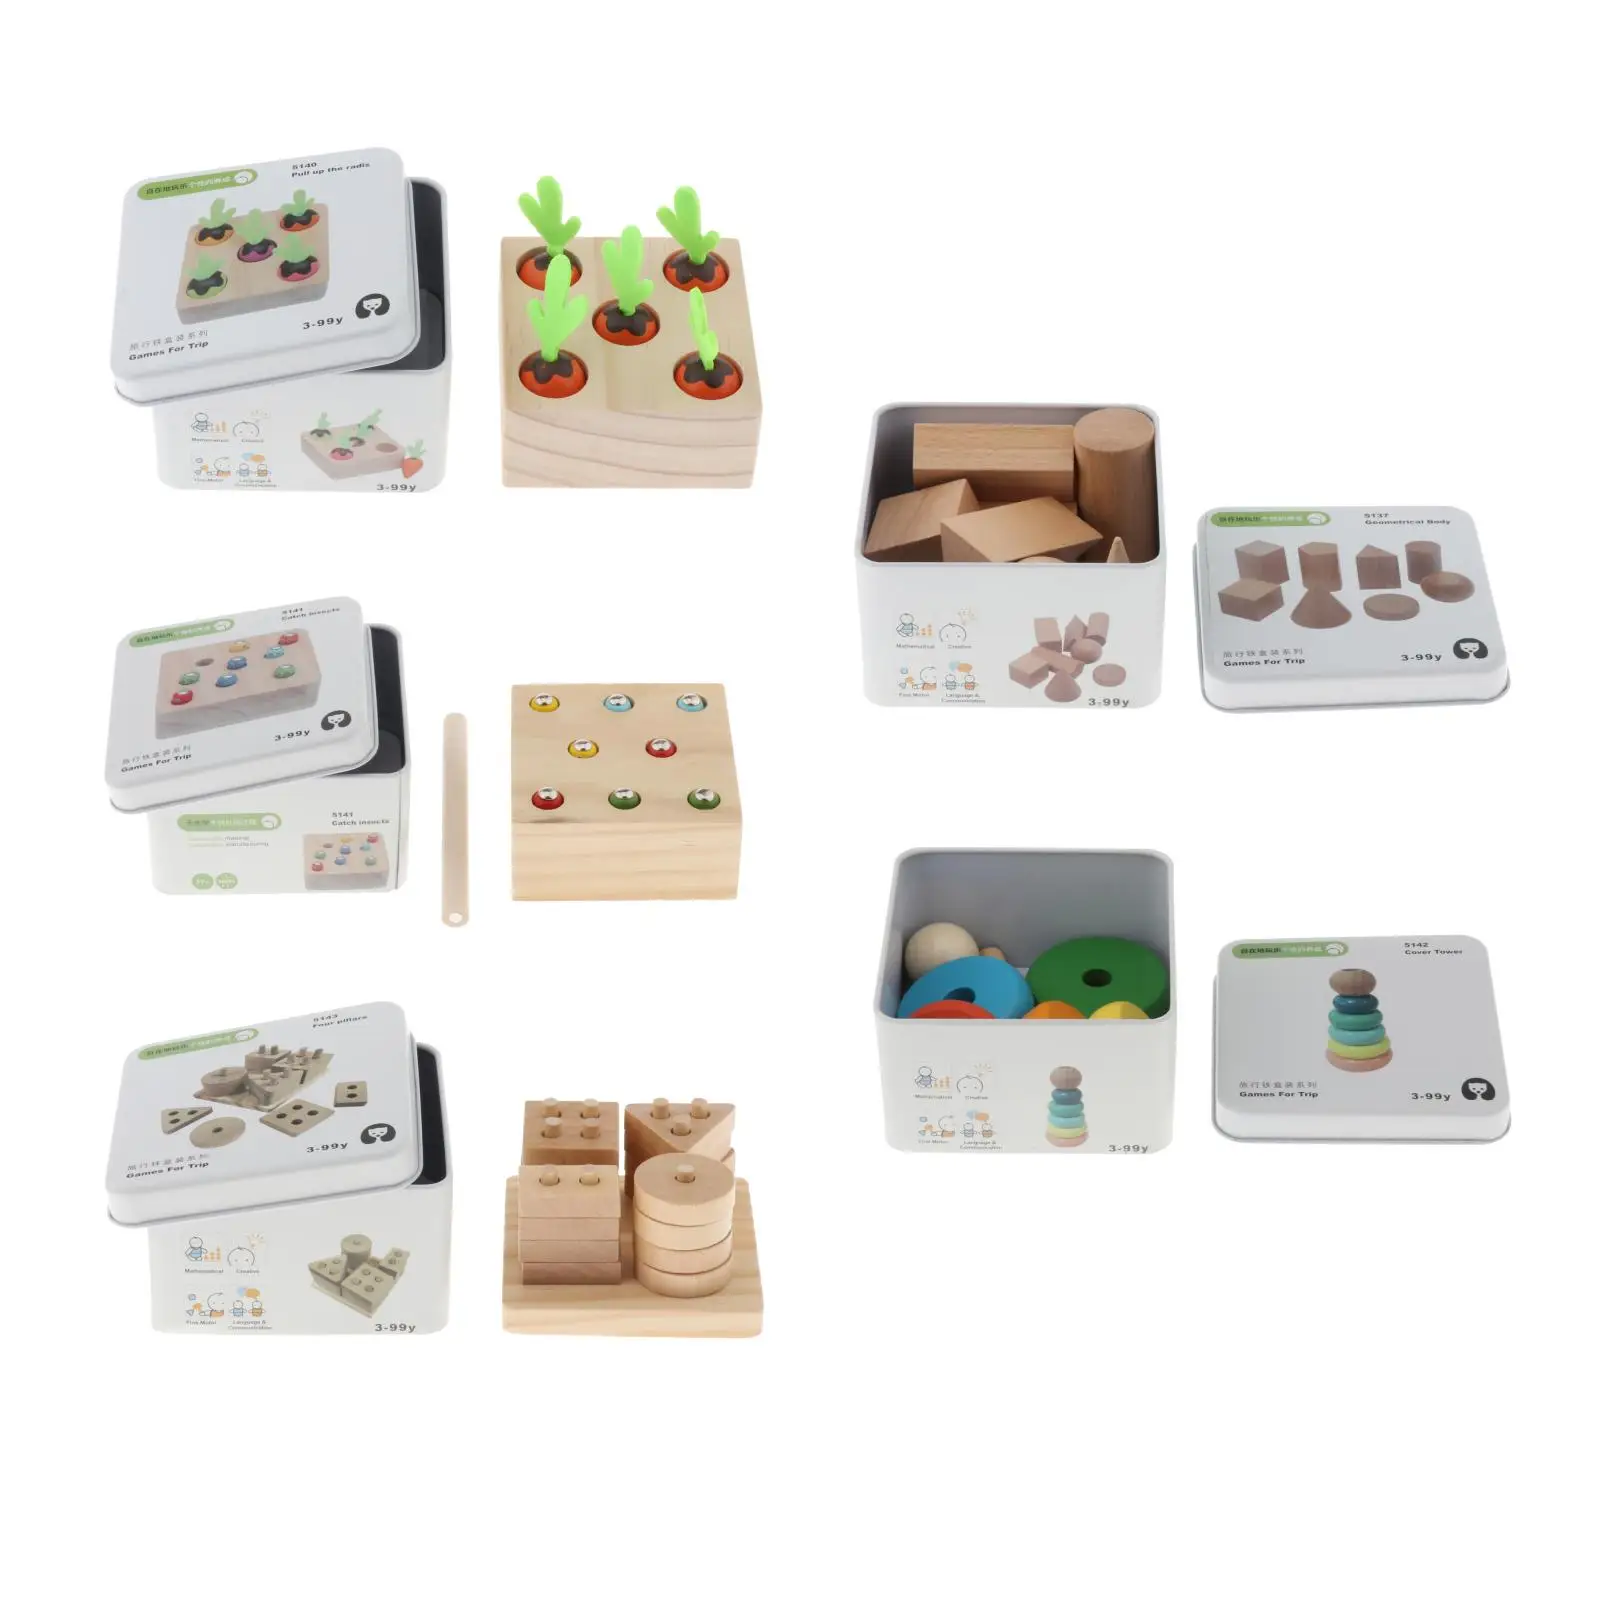 Geometry Block Game Toys Montessori Educational Toy Developmental Toys